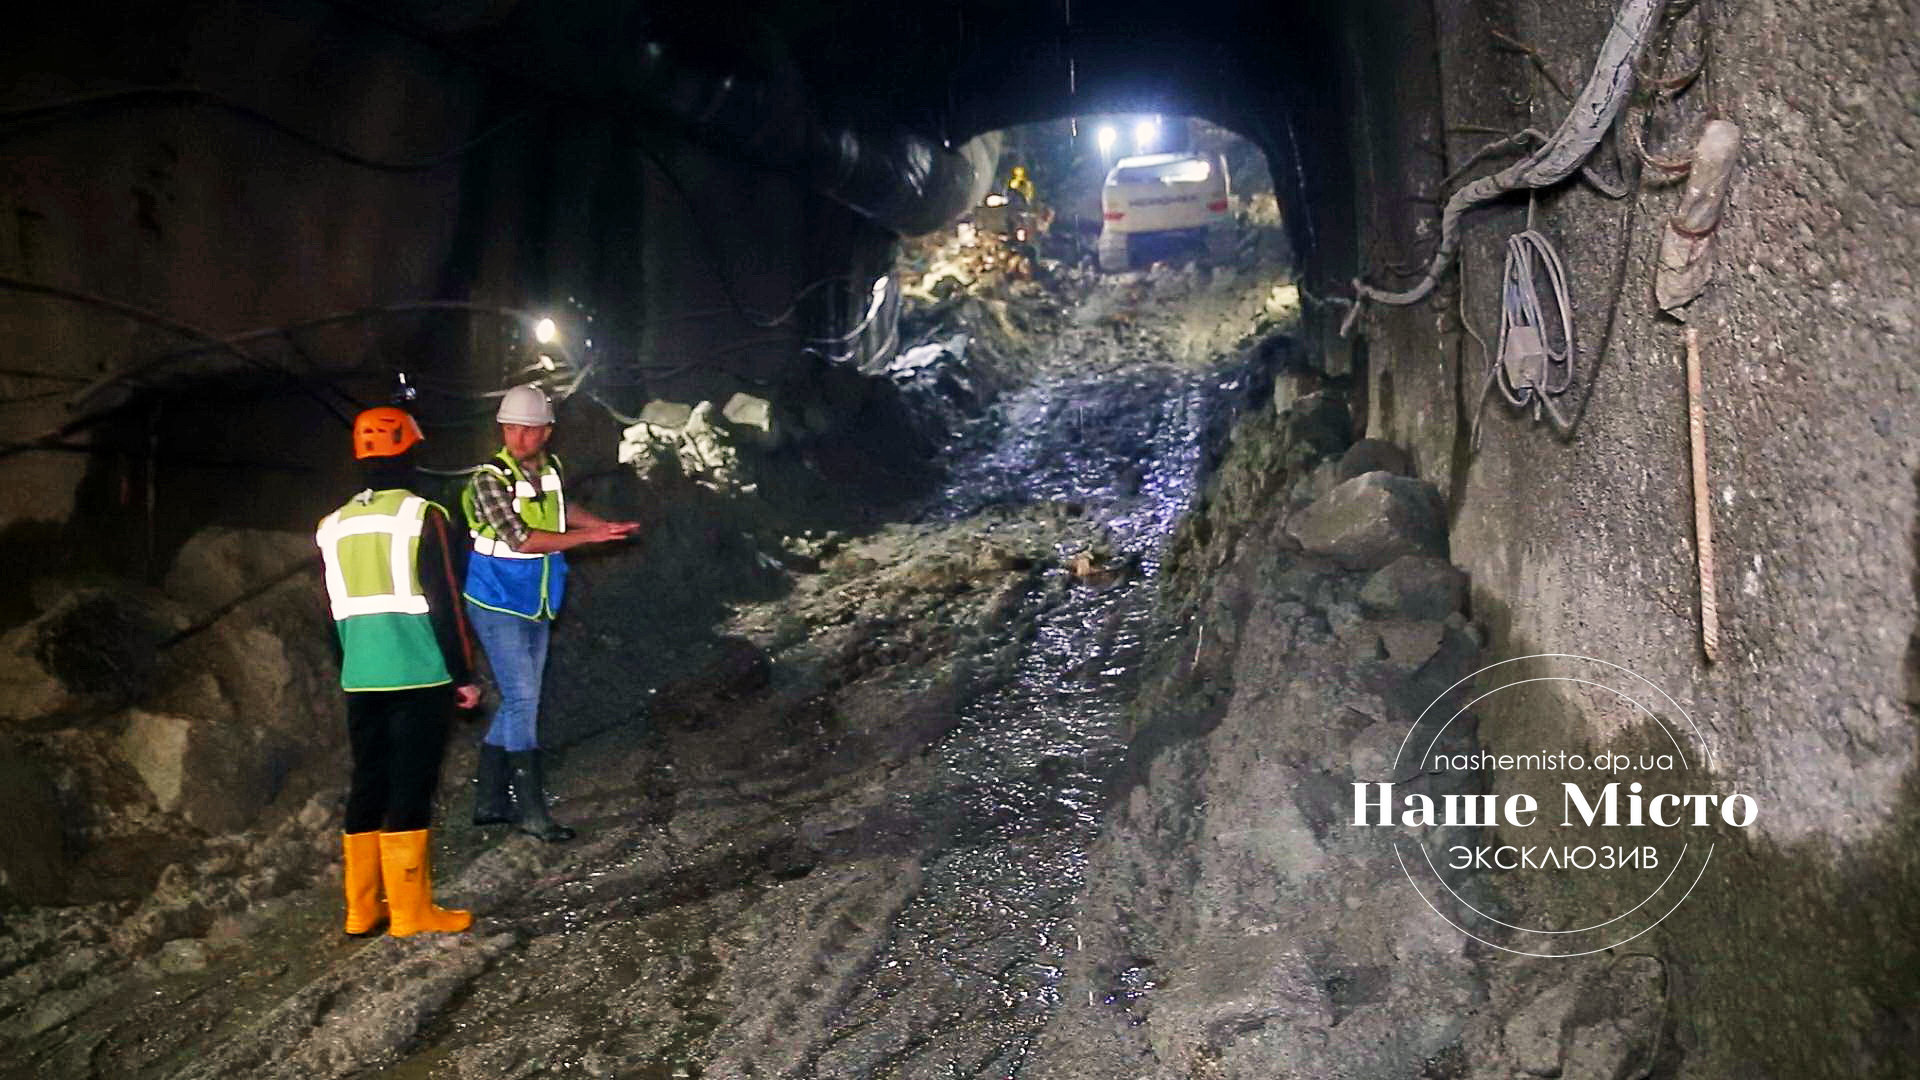 Со дня на день будут первые метры готового пути: журналисты проверили, как строят метро в Днепре